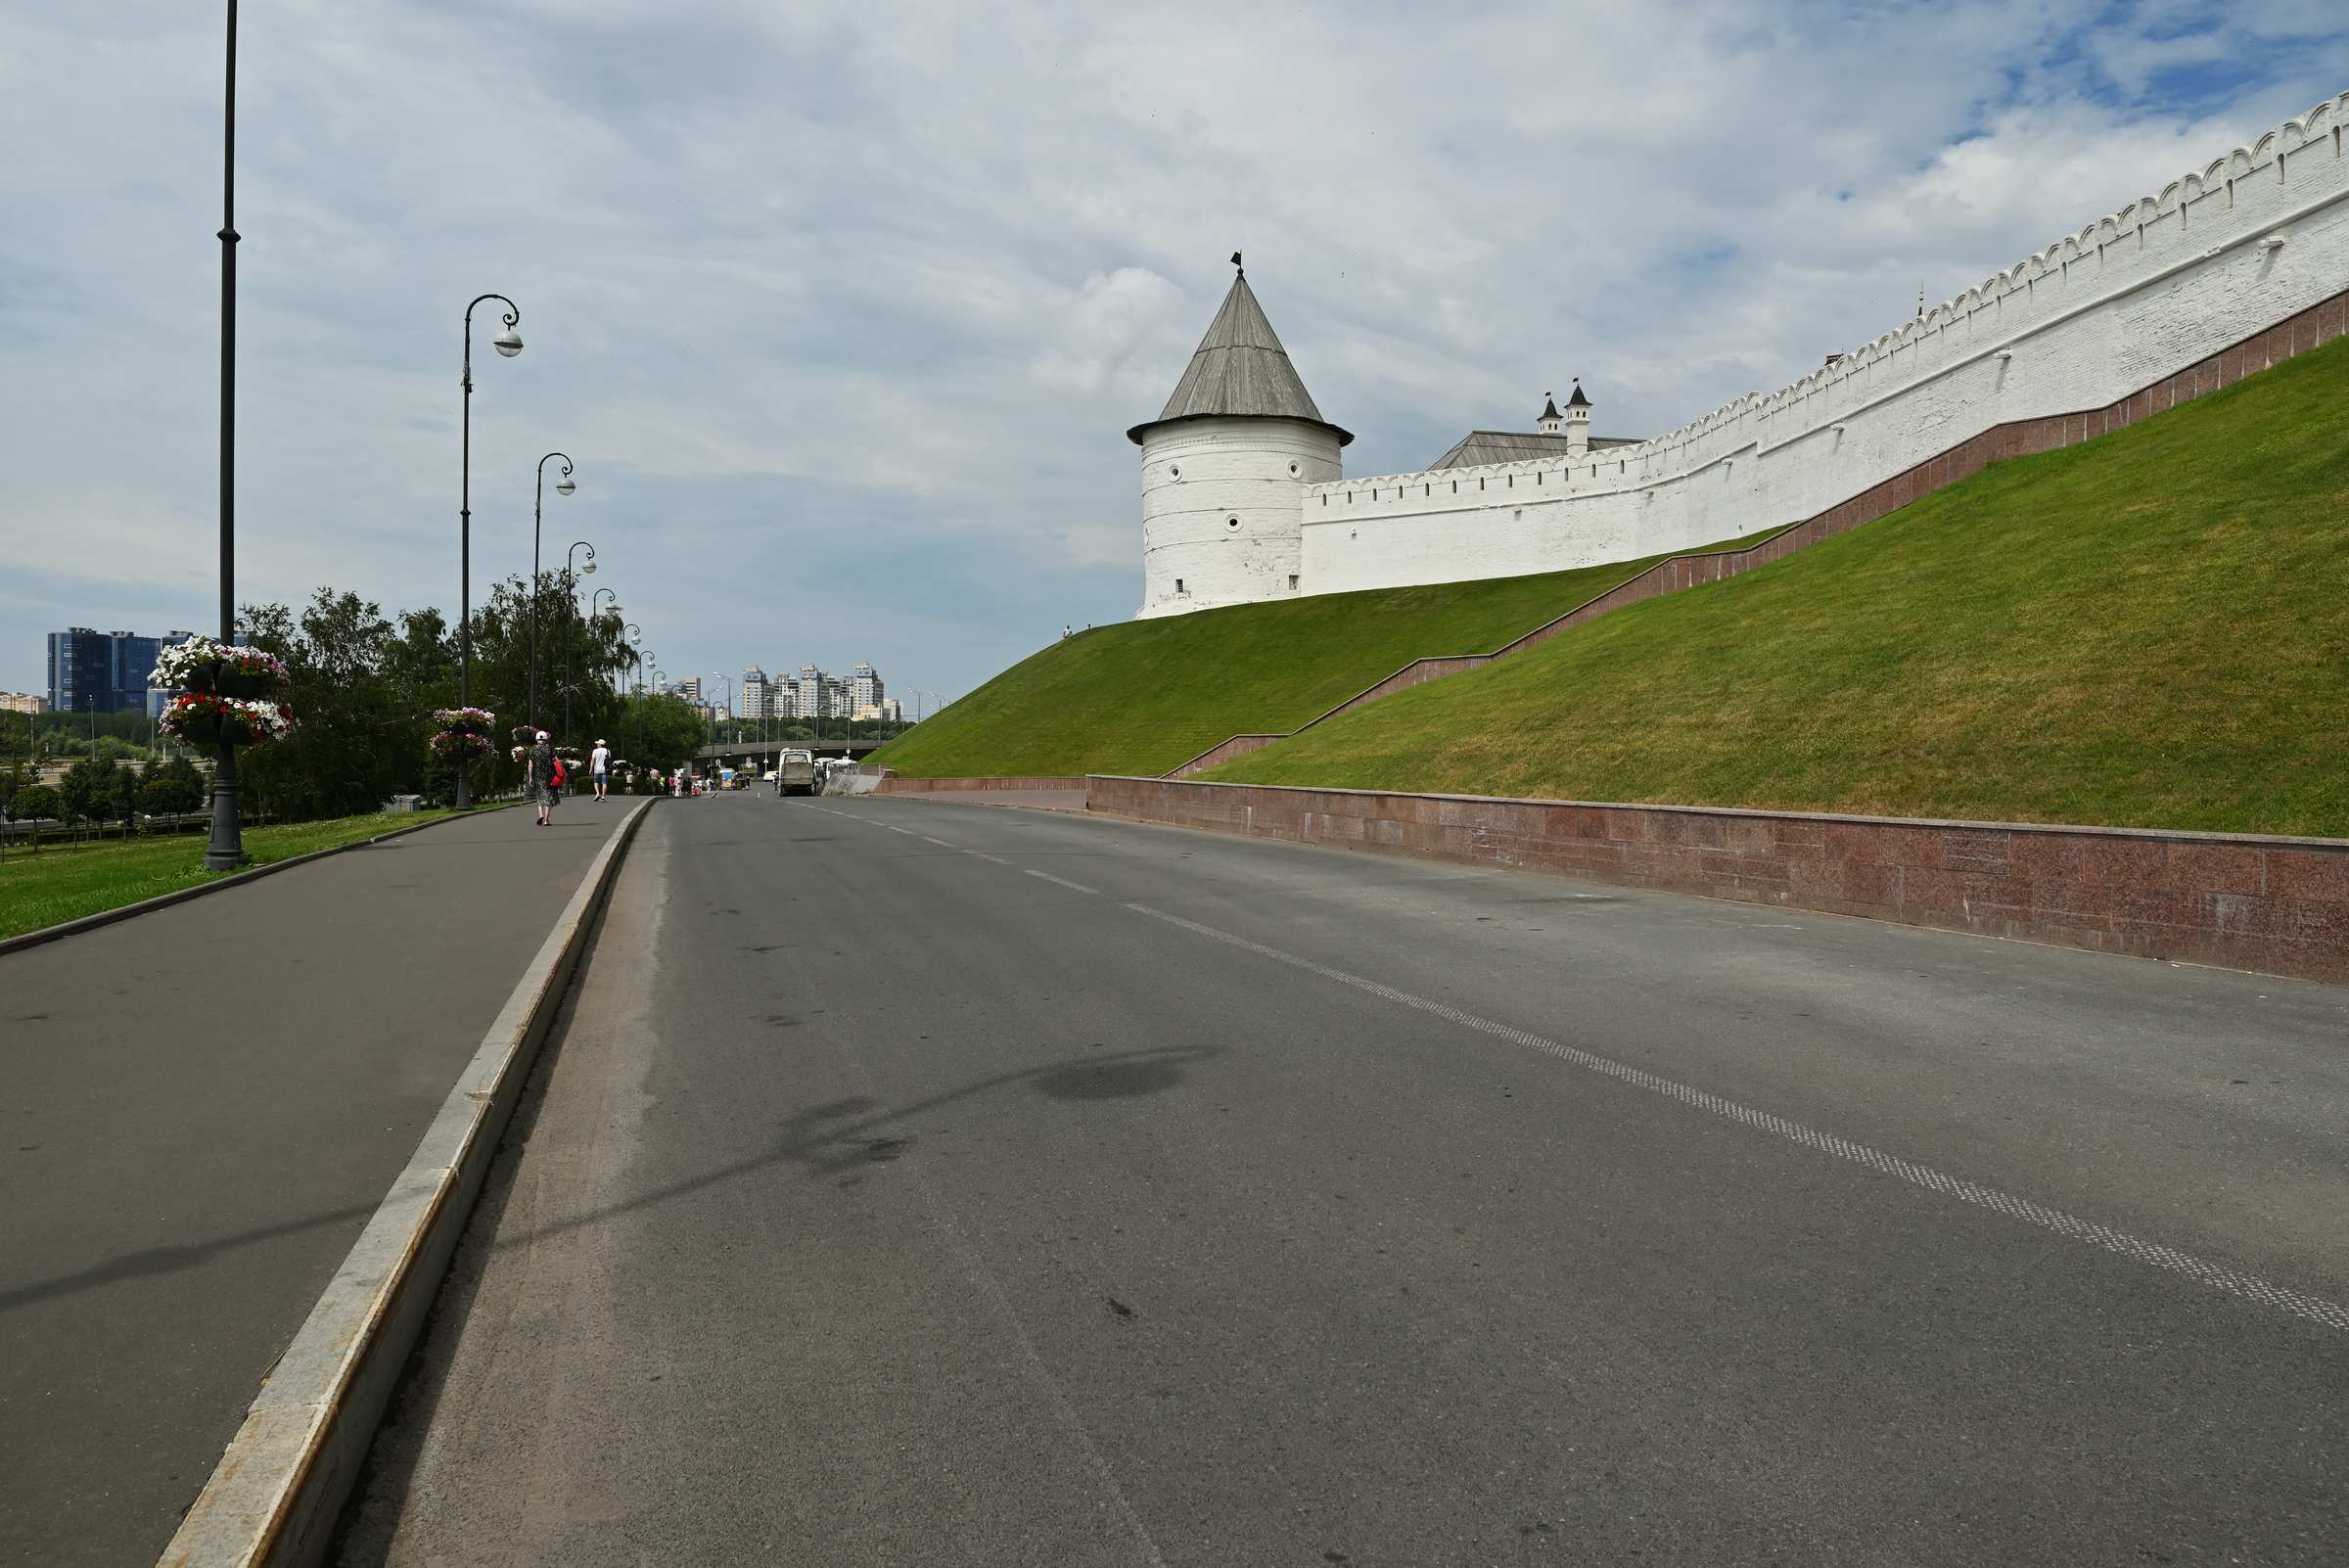 Безымянная башня в Казани